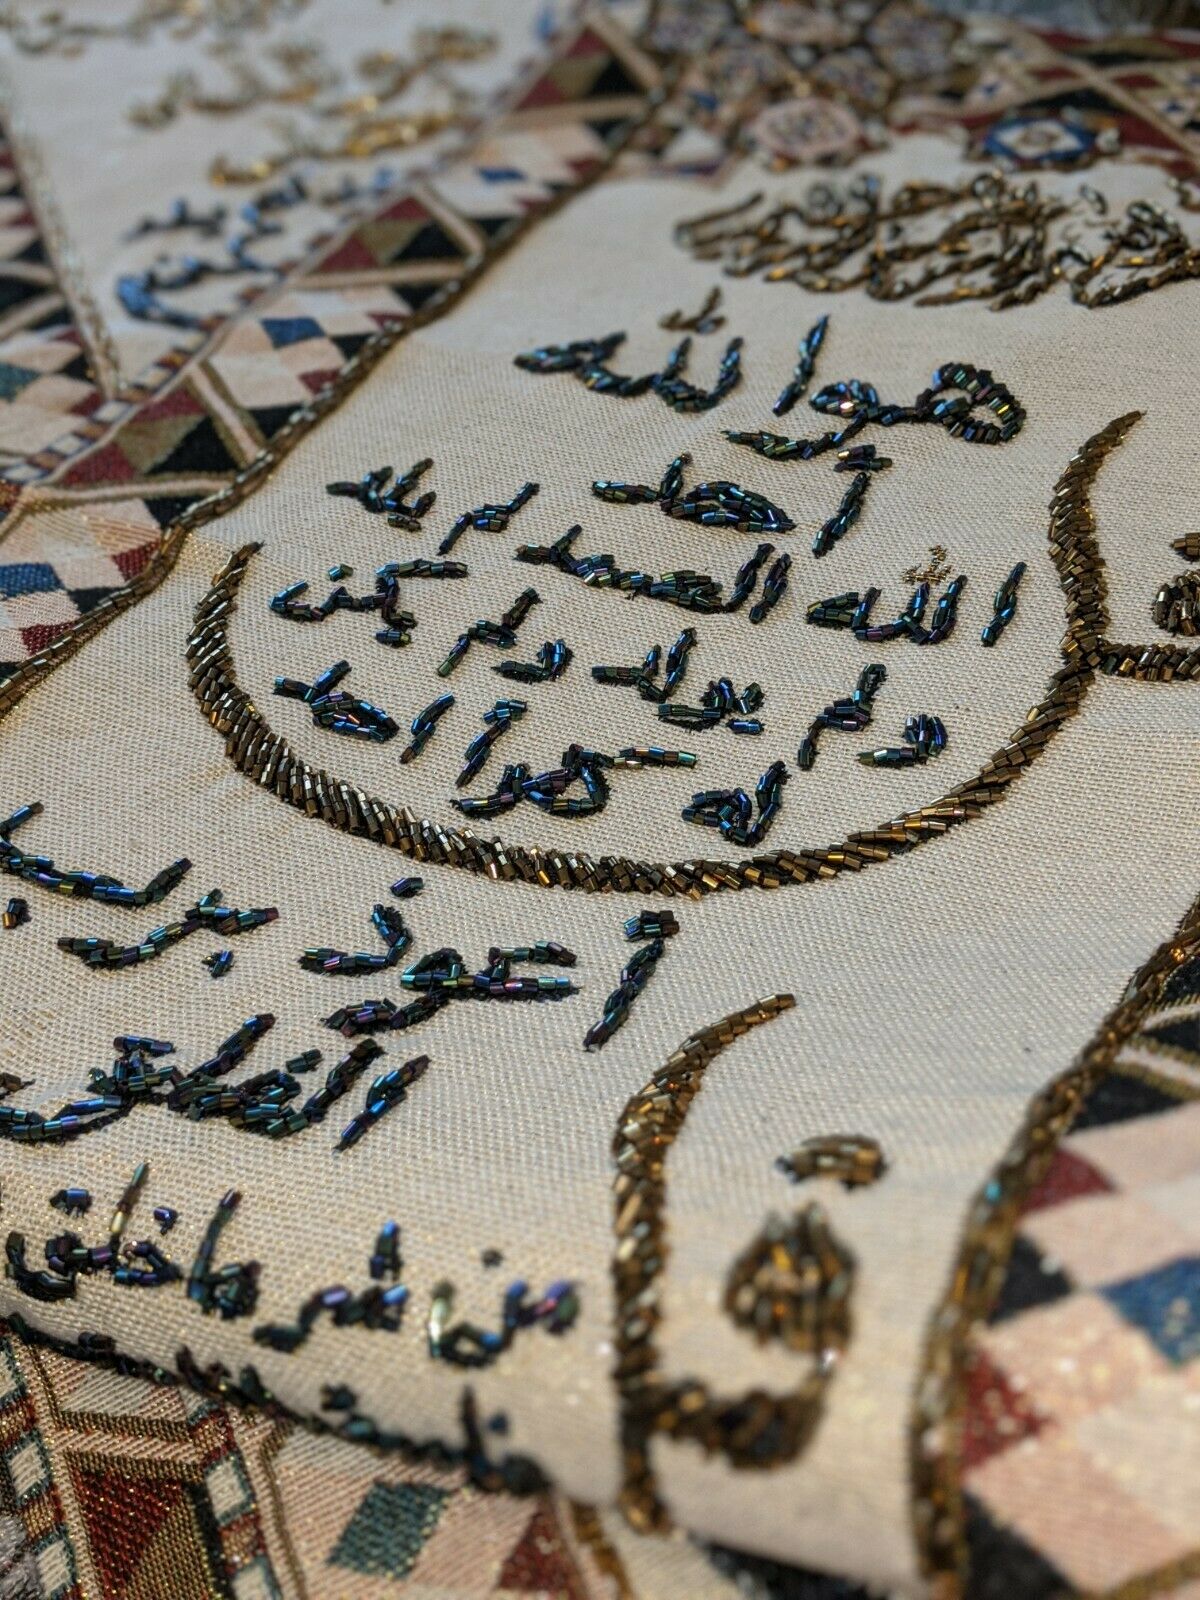 لوحة جدارية قماش : سورة الإخلاص والمعوذتين شرقيات وإسلاميات مكتبة بنيان